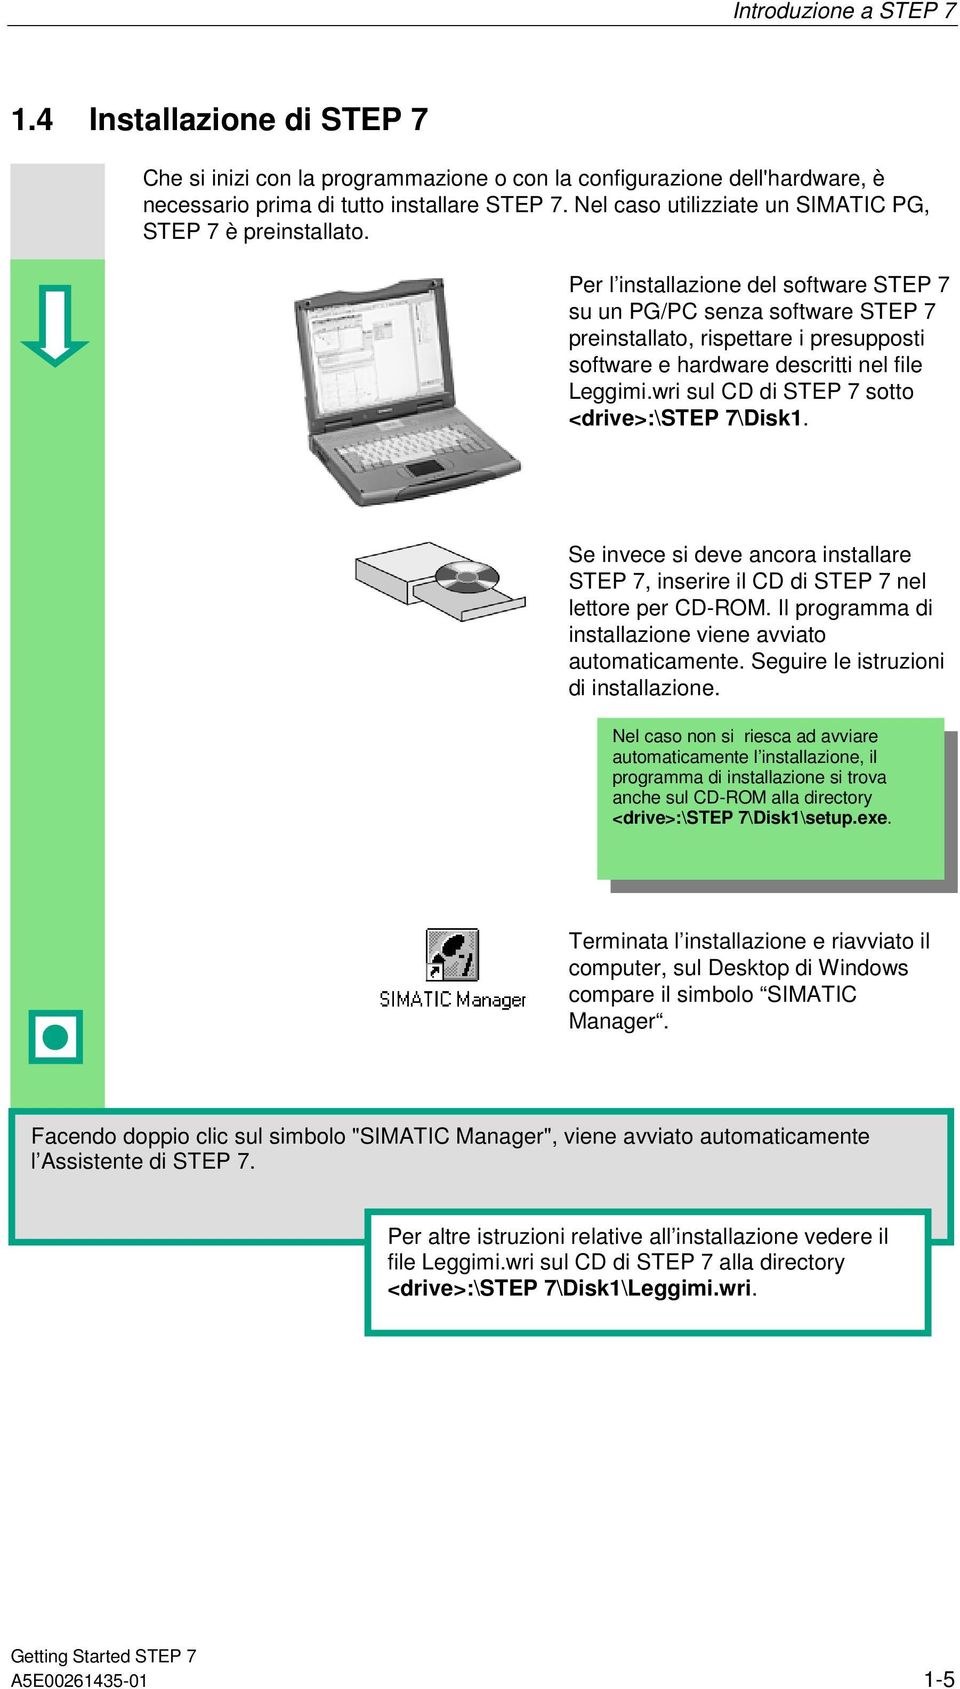 Per l installazione del software STEP 7 su un PG/PC senza software STEP 7 preinstallato, rispettare i presupposti software e hardware descritti nel file Leggimi.